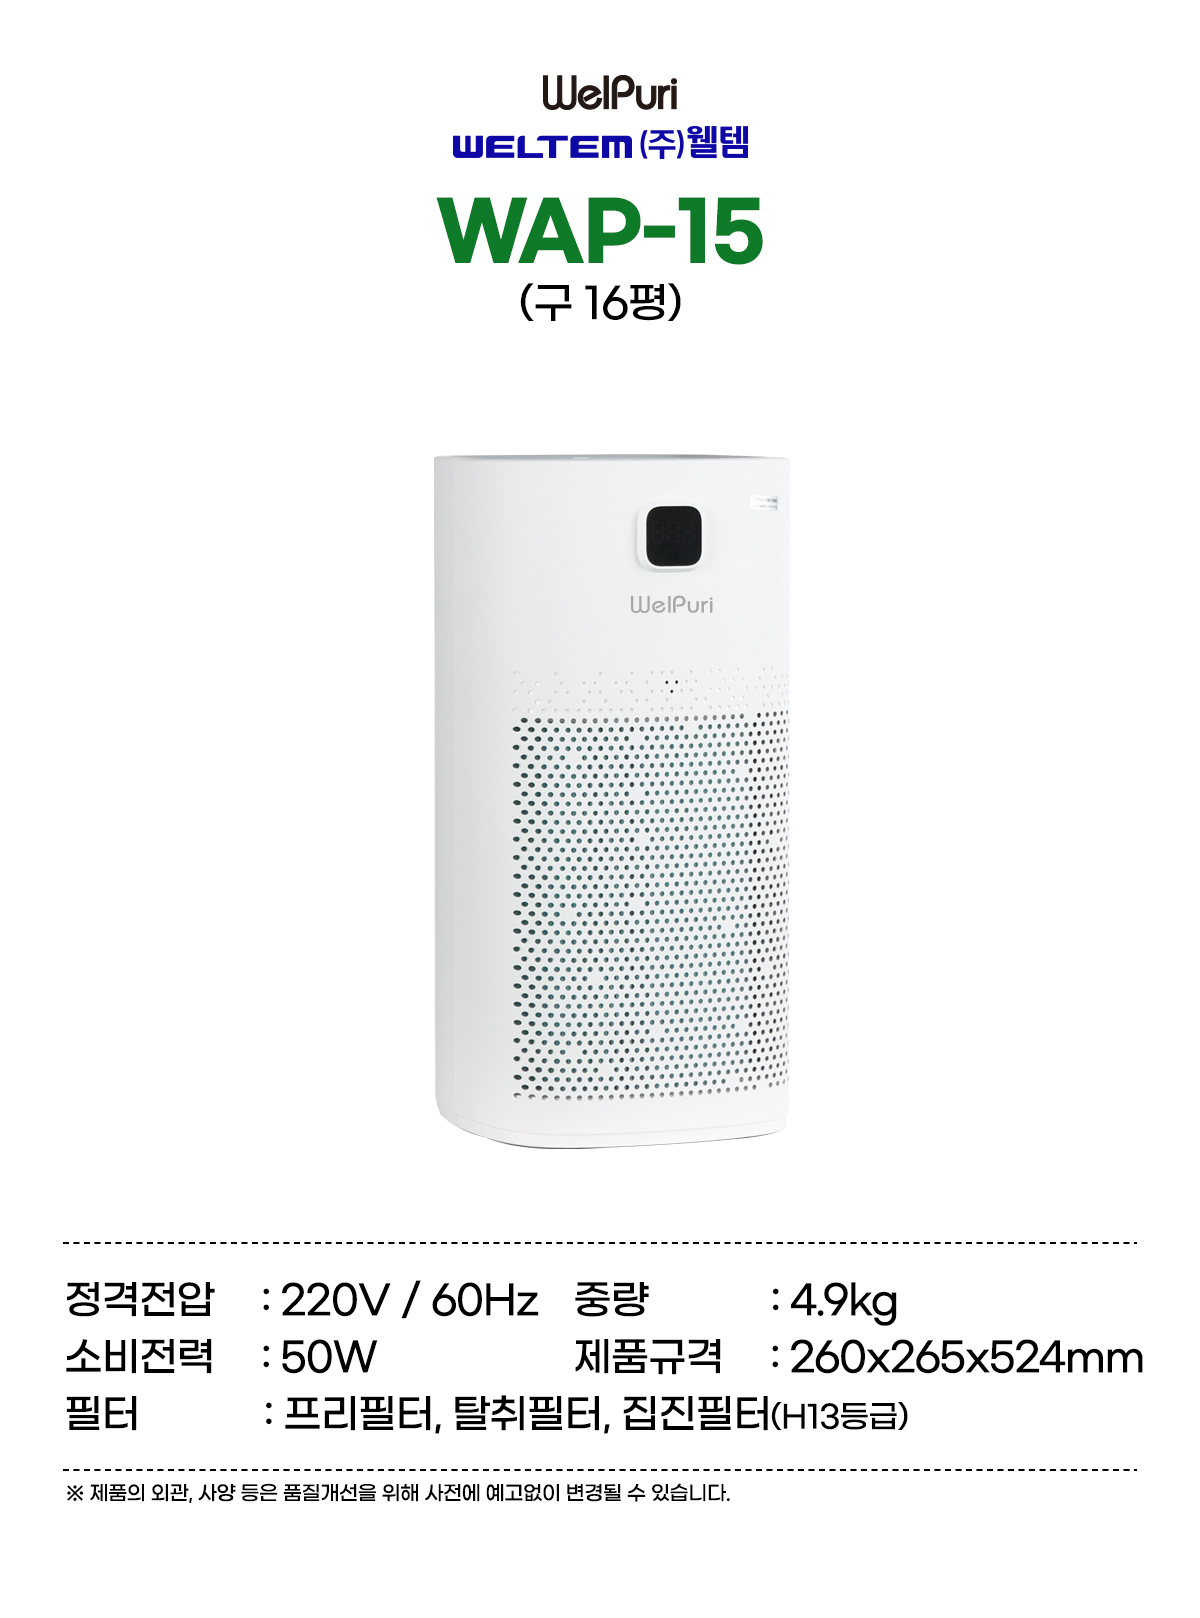 WAP-15(3)_100312.jpg